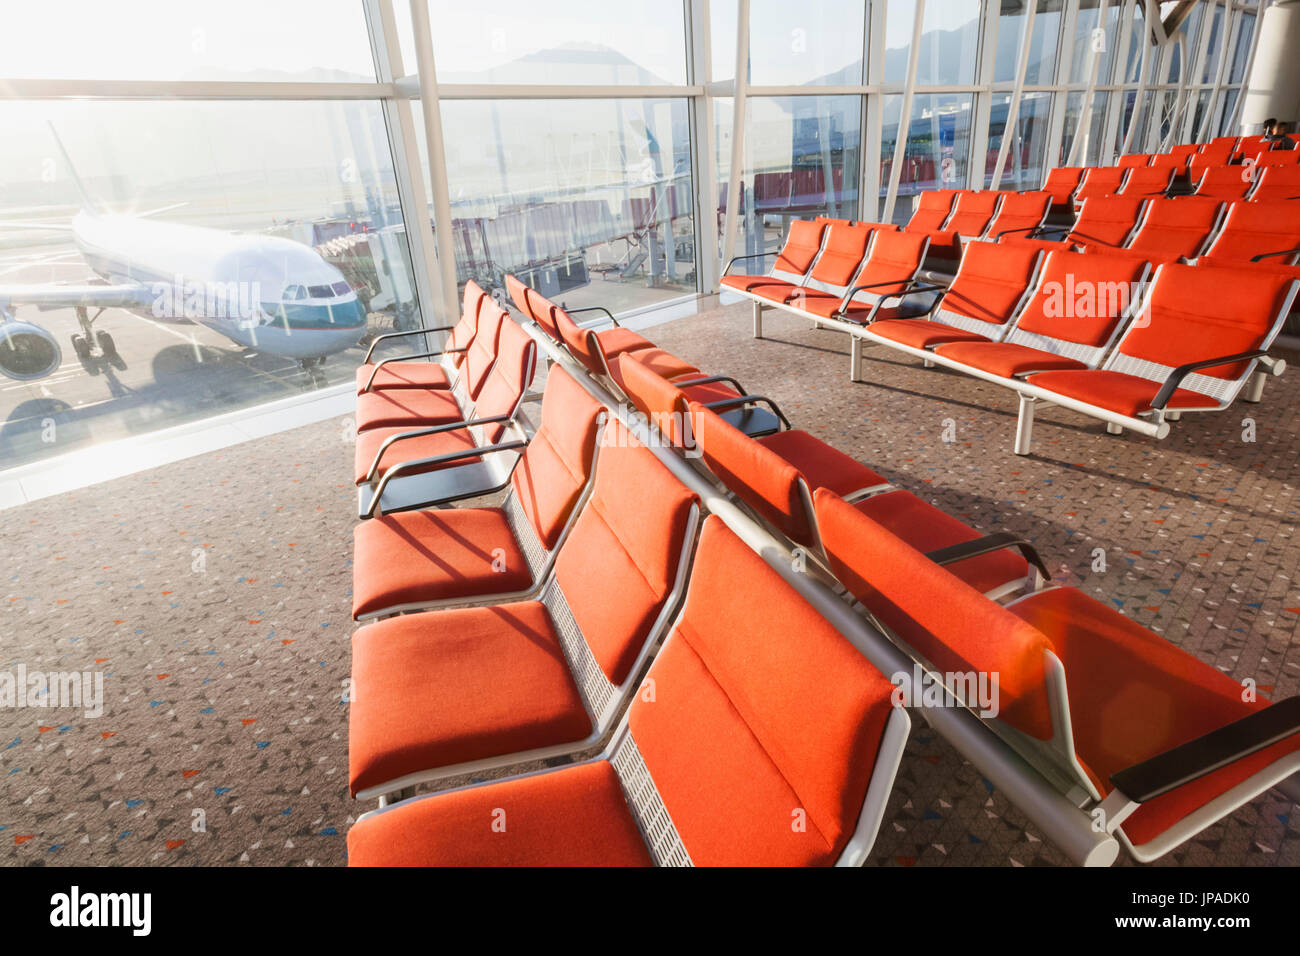 China, Hong Kong, Hong Kong International Airport, Departure Lounge Seats Stock Photo